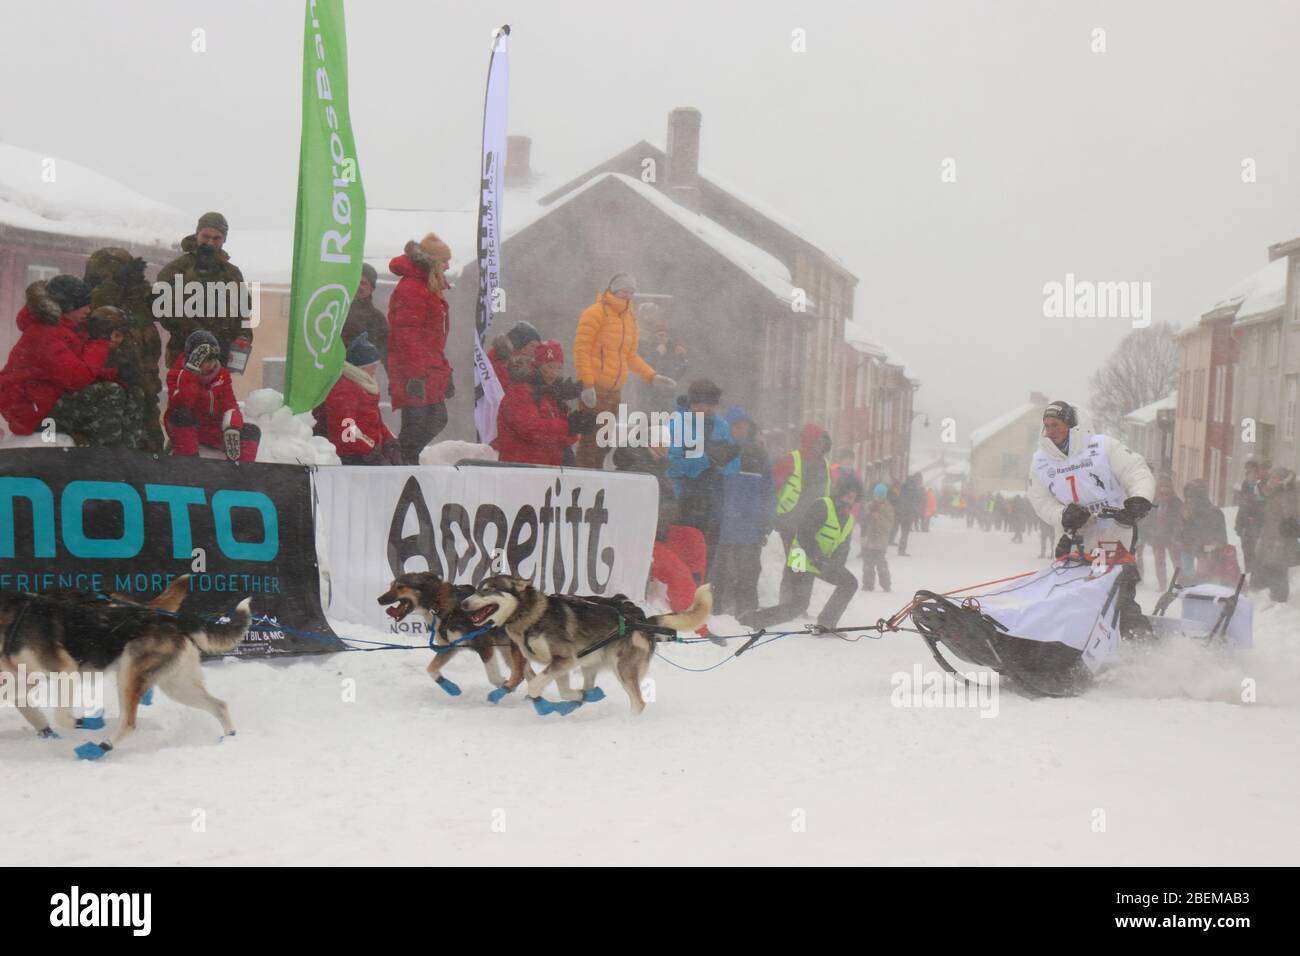 L'équipe de chiens de traîneau Husky au début de la plus grande course de chiens de traîneau au monde, 'Femundløpet/Femund Race', dans la ville historique de Røros, Norvège Banque D'Images